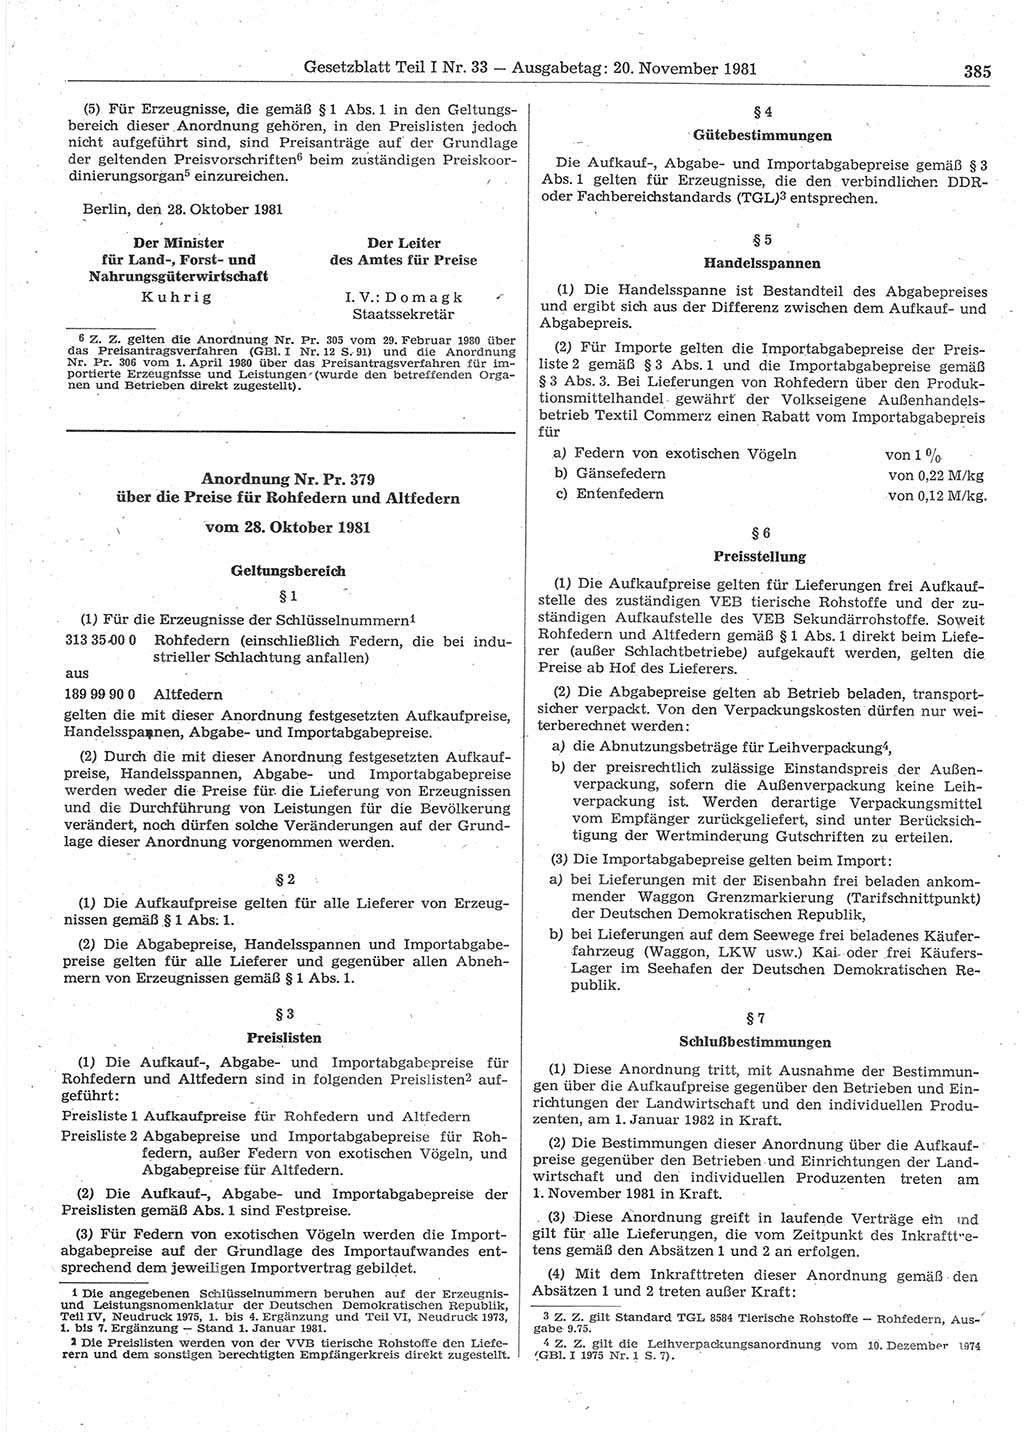 Gesetzblatt (GBl.) der Deutschen Demokratischen Republik (DDR) Teil Ⅰ 1981, Seite 385 (GBl. DDR Ⅰ 1981, S. 385)